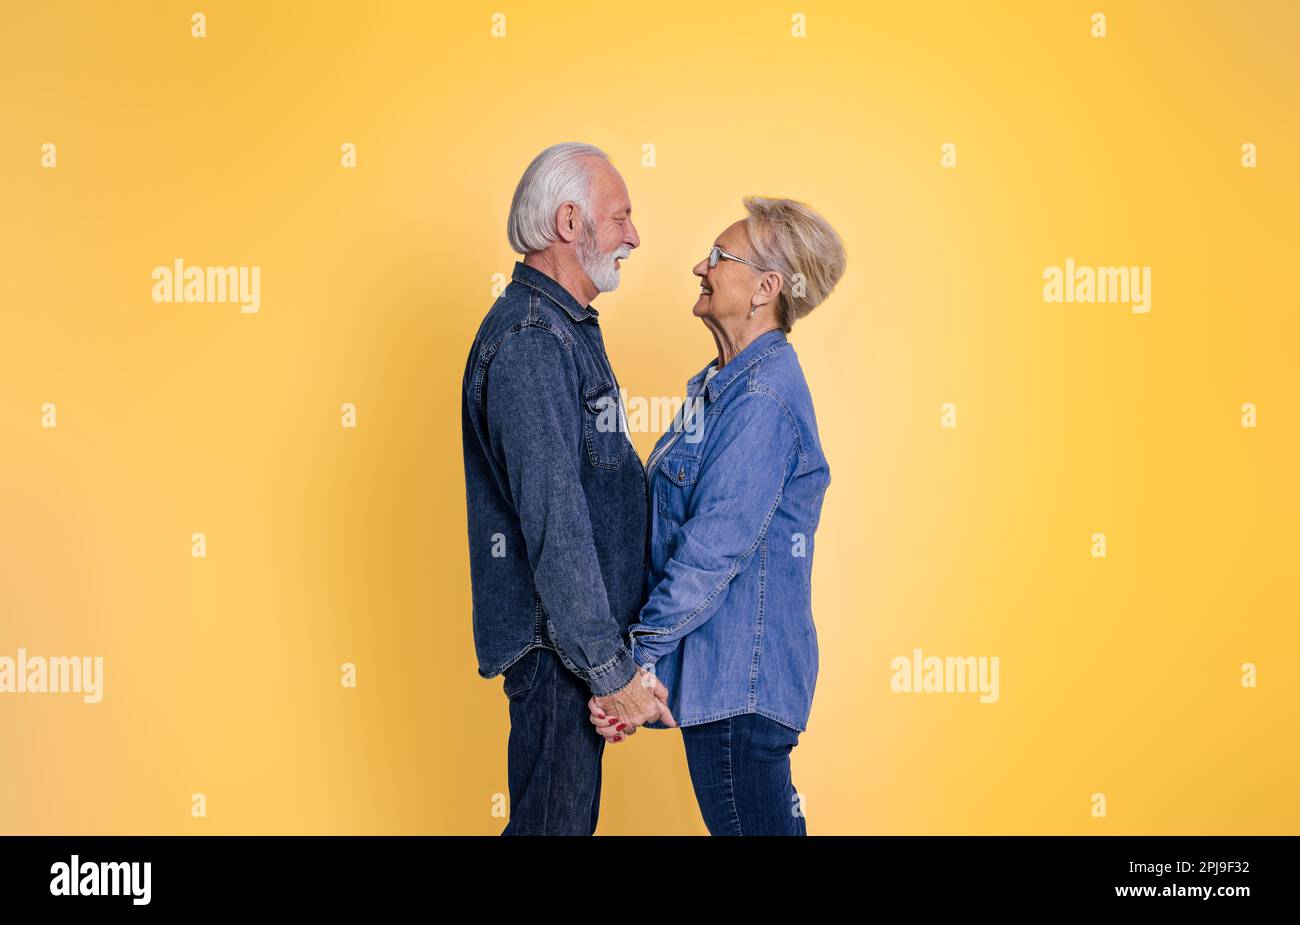 Seitenansicht eines liebevollen Seniorenmannes und einer liebevollen Seniorenfrau, die Händchen hält und sich romantisch anschaut, während sie isoliert auf gelbem Hintergrund stehen Stockfoto